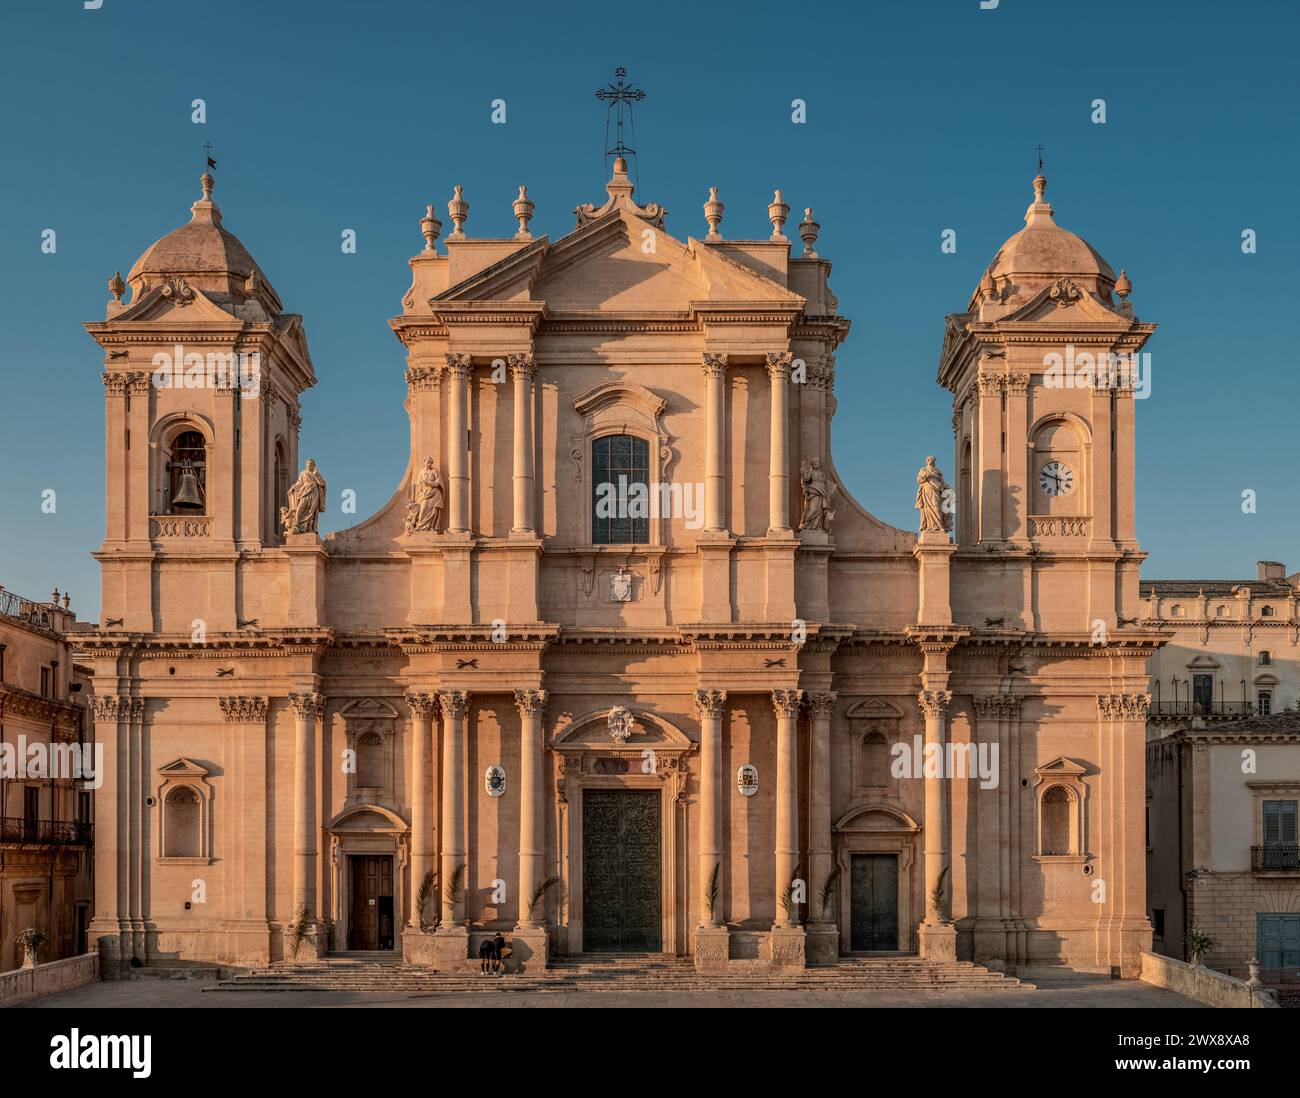 Il Duomo della città barocca di noto, cattedrale metropolitana e attrazione turistica nella Sicilia sud-orientale. Provincia di Siracusa, Italia Foto Stock